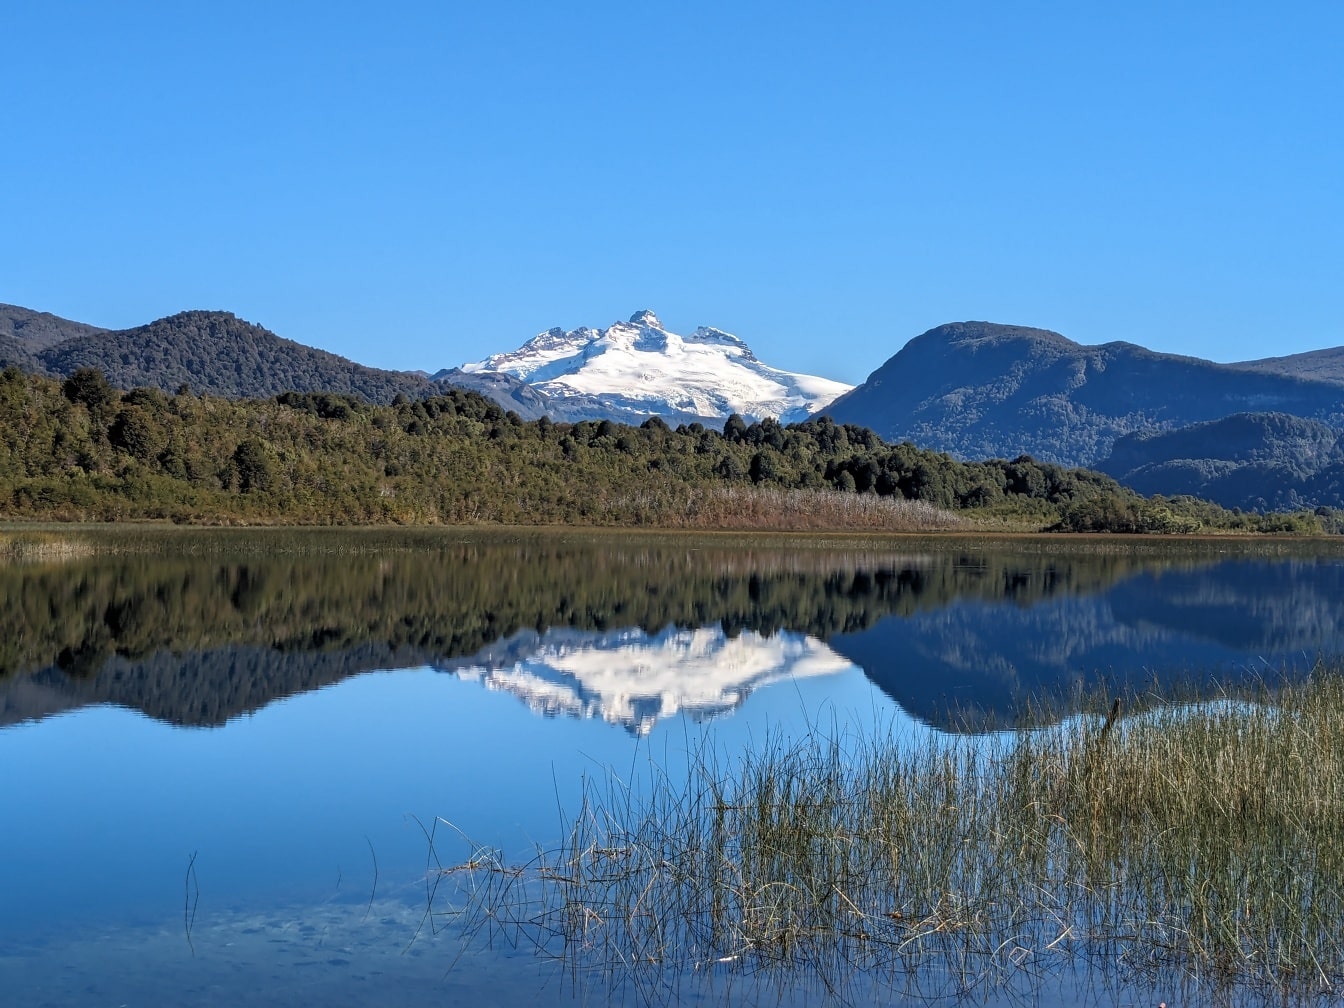 Η λίμνη Lago Hess στο εθνικό πάρκο Nahuel Huapi στην επαρχία Rio Negro στην Αργεντινή με ένα βουνό στο βάθος